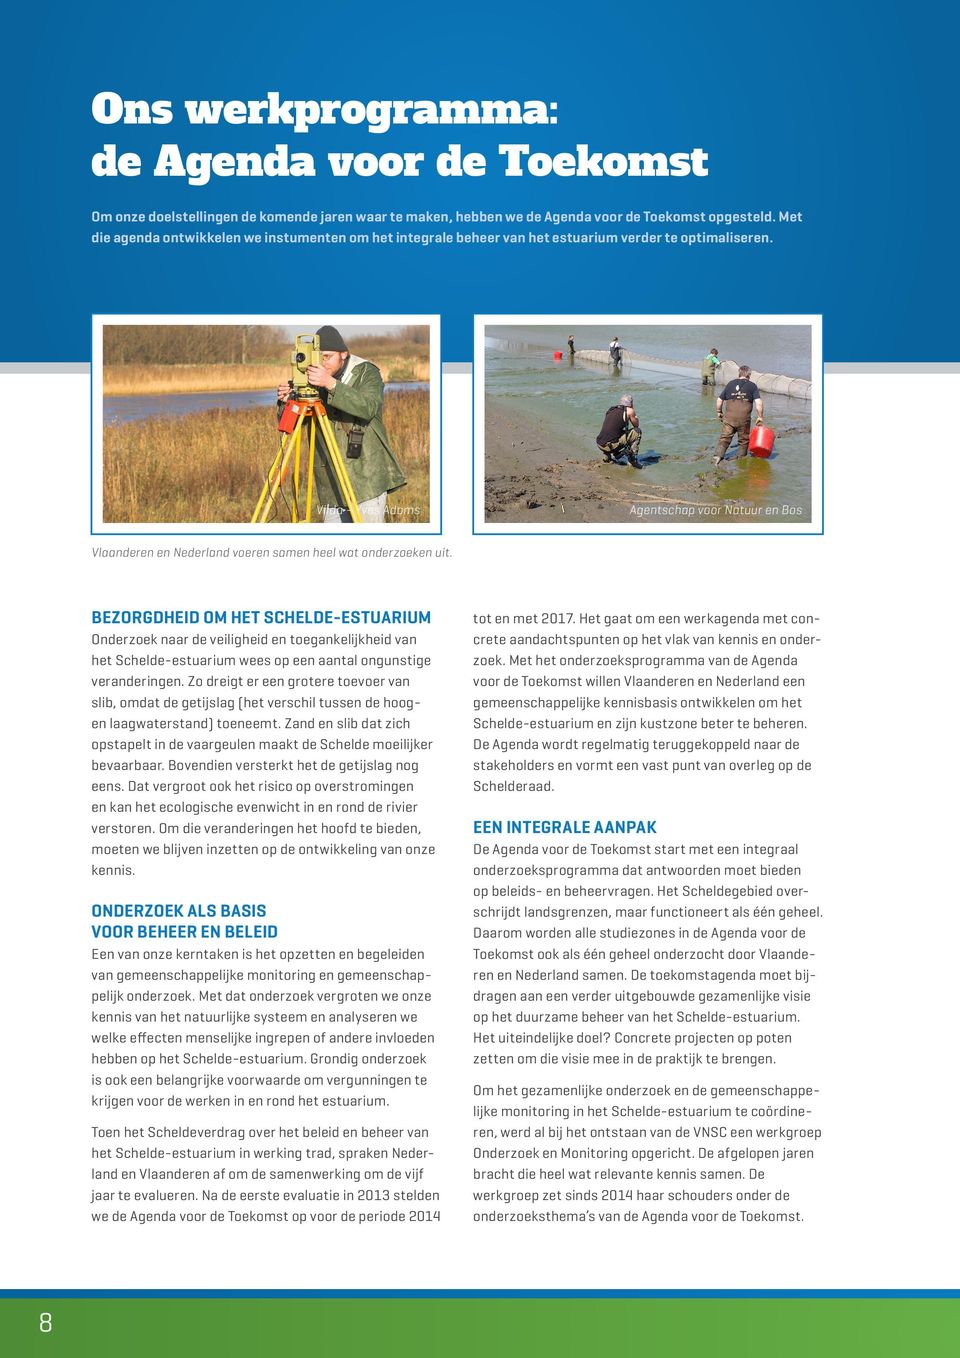 Vilda - Yves Adams Agentschap voor Natuur en Bos Vlaanderen en Nederland voeren samen heel wat onderzoeken uit.